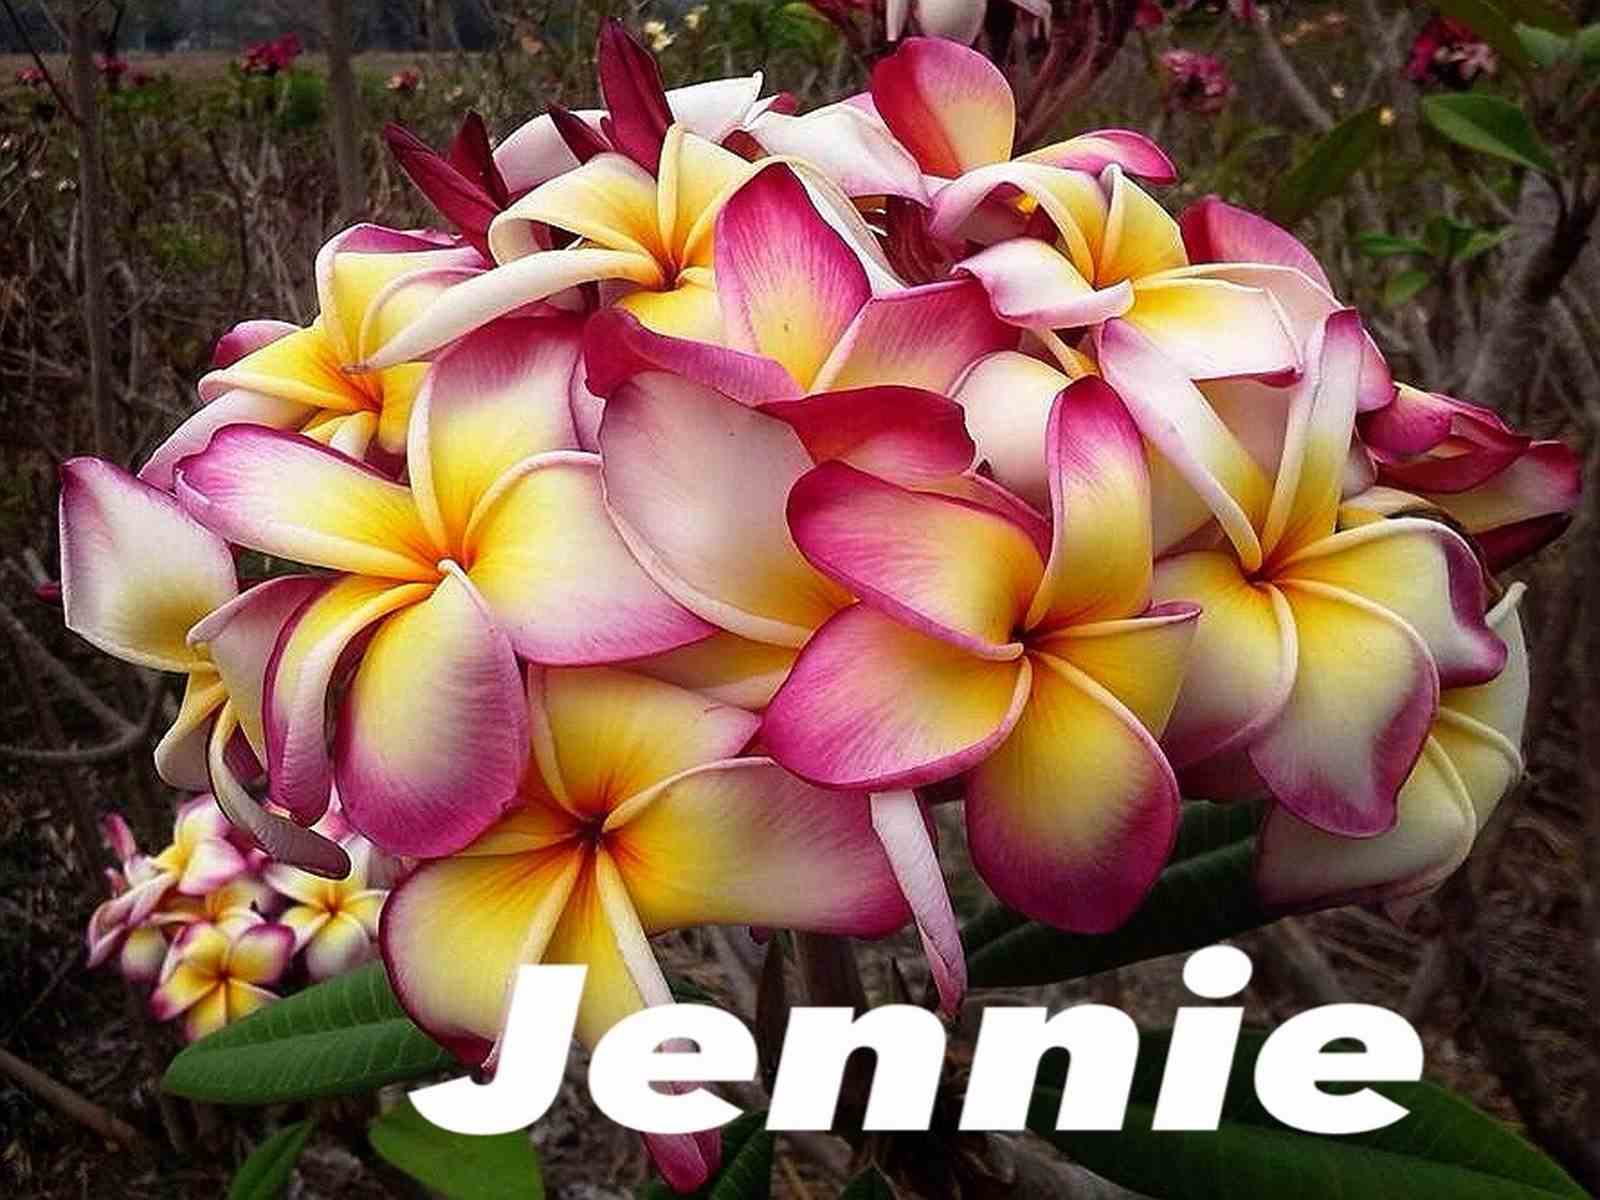 Plumeria rubra "jennie" (frangipanier) taille pot de 2 litres ? 20/30 cm -   blanc/jaune/rose